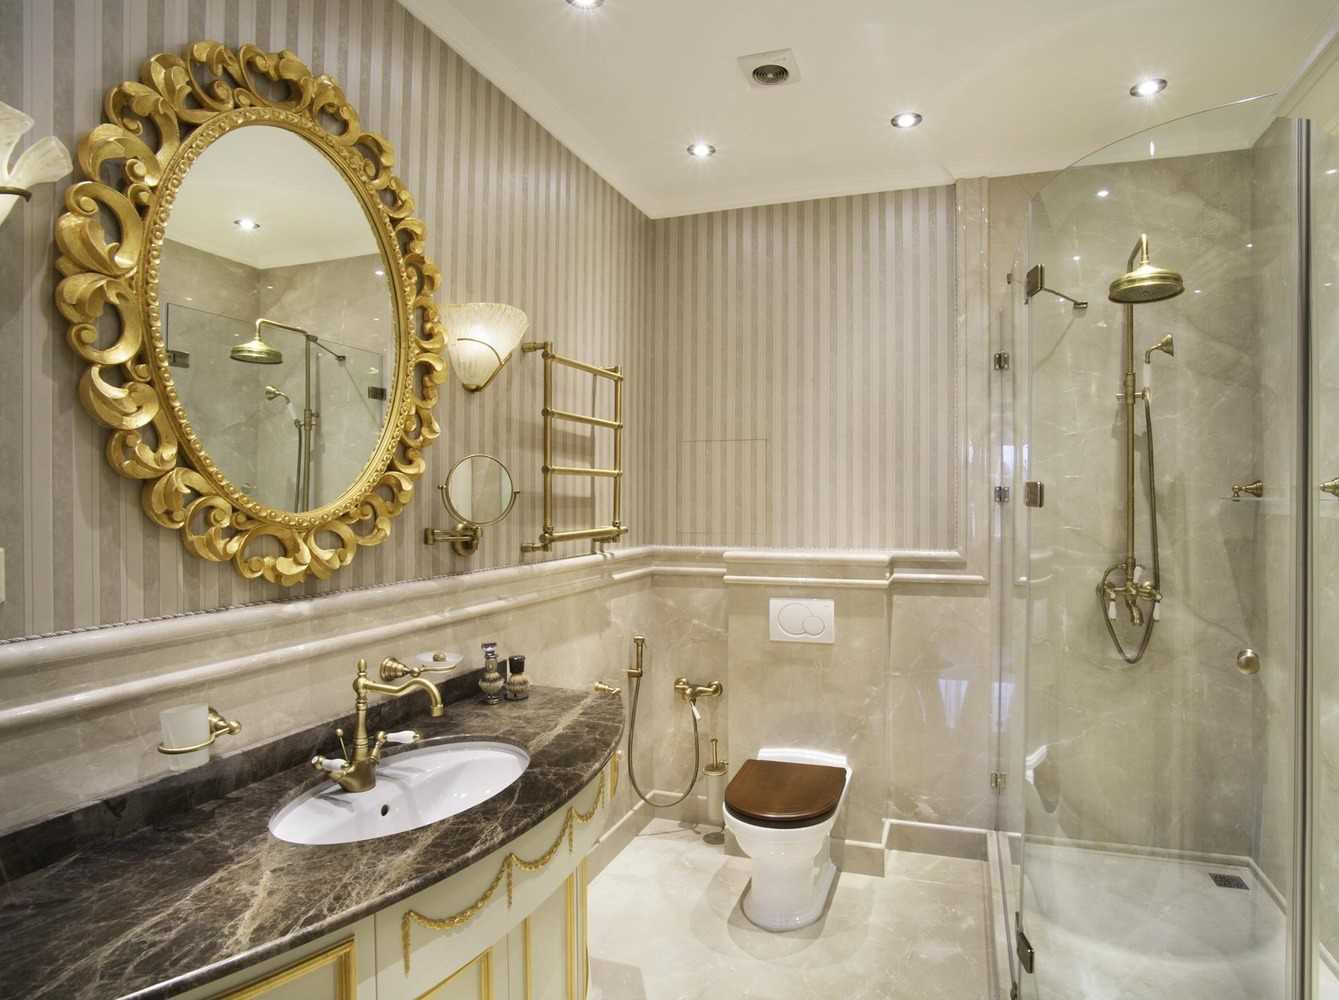 l'idea di un bellissimo interno del bagno in stile classico